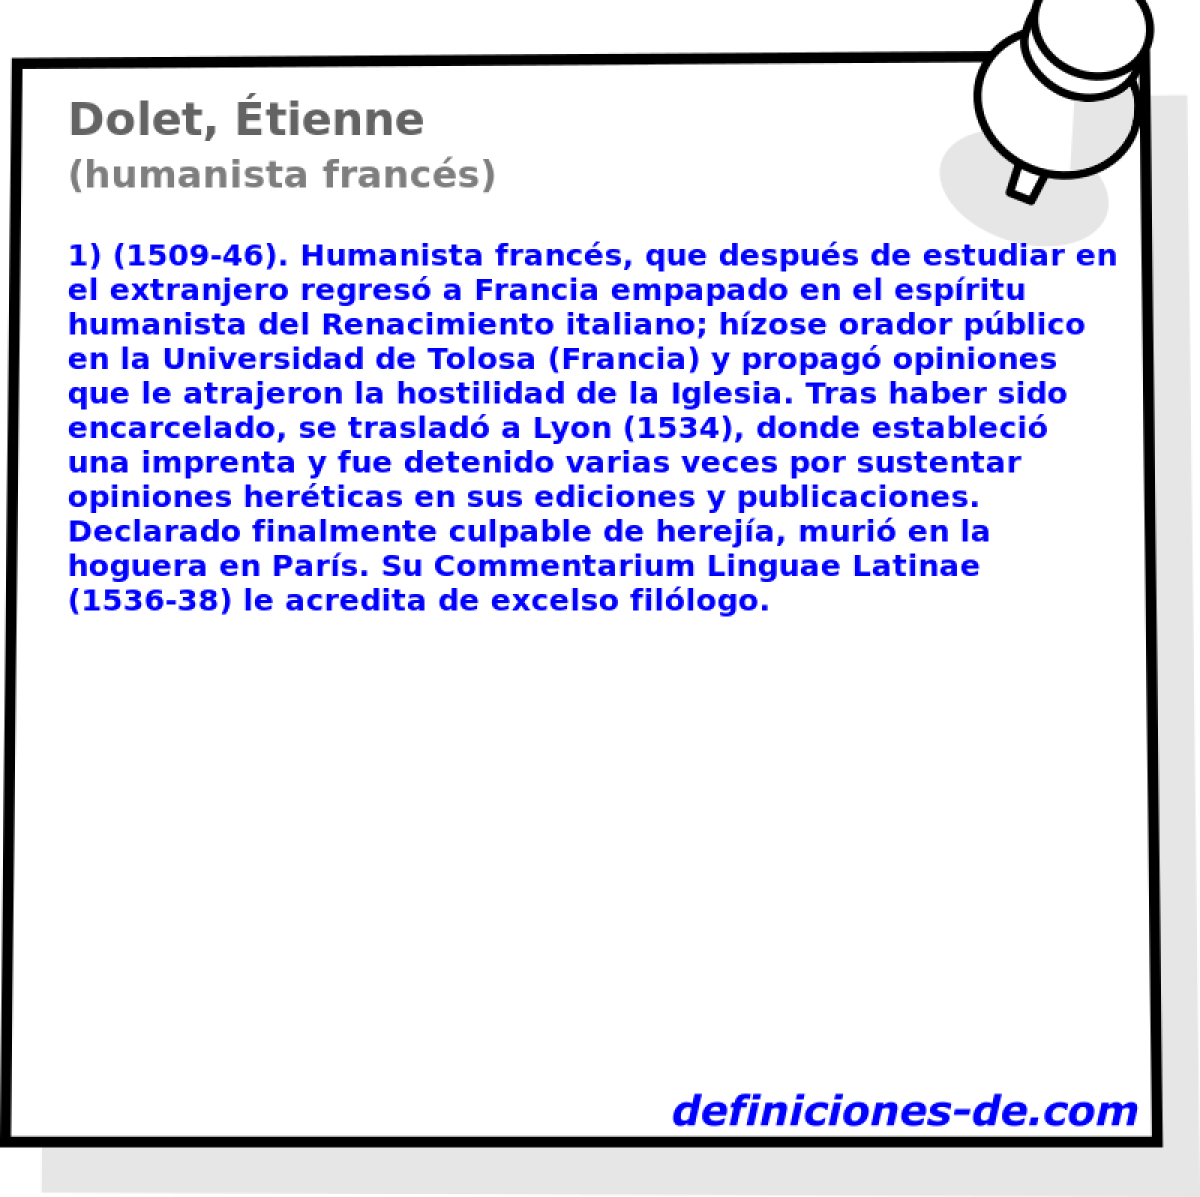 Dolet, tienne (humanista francs)